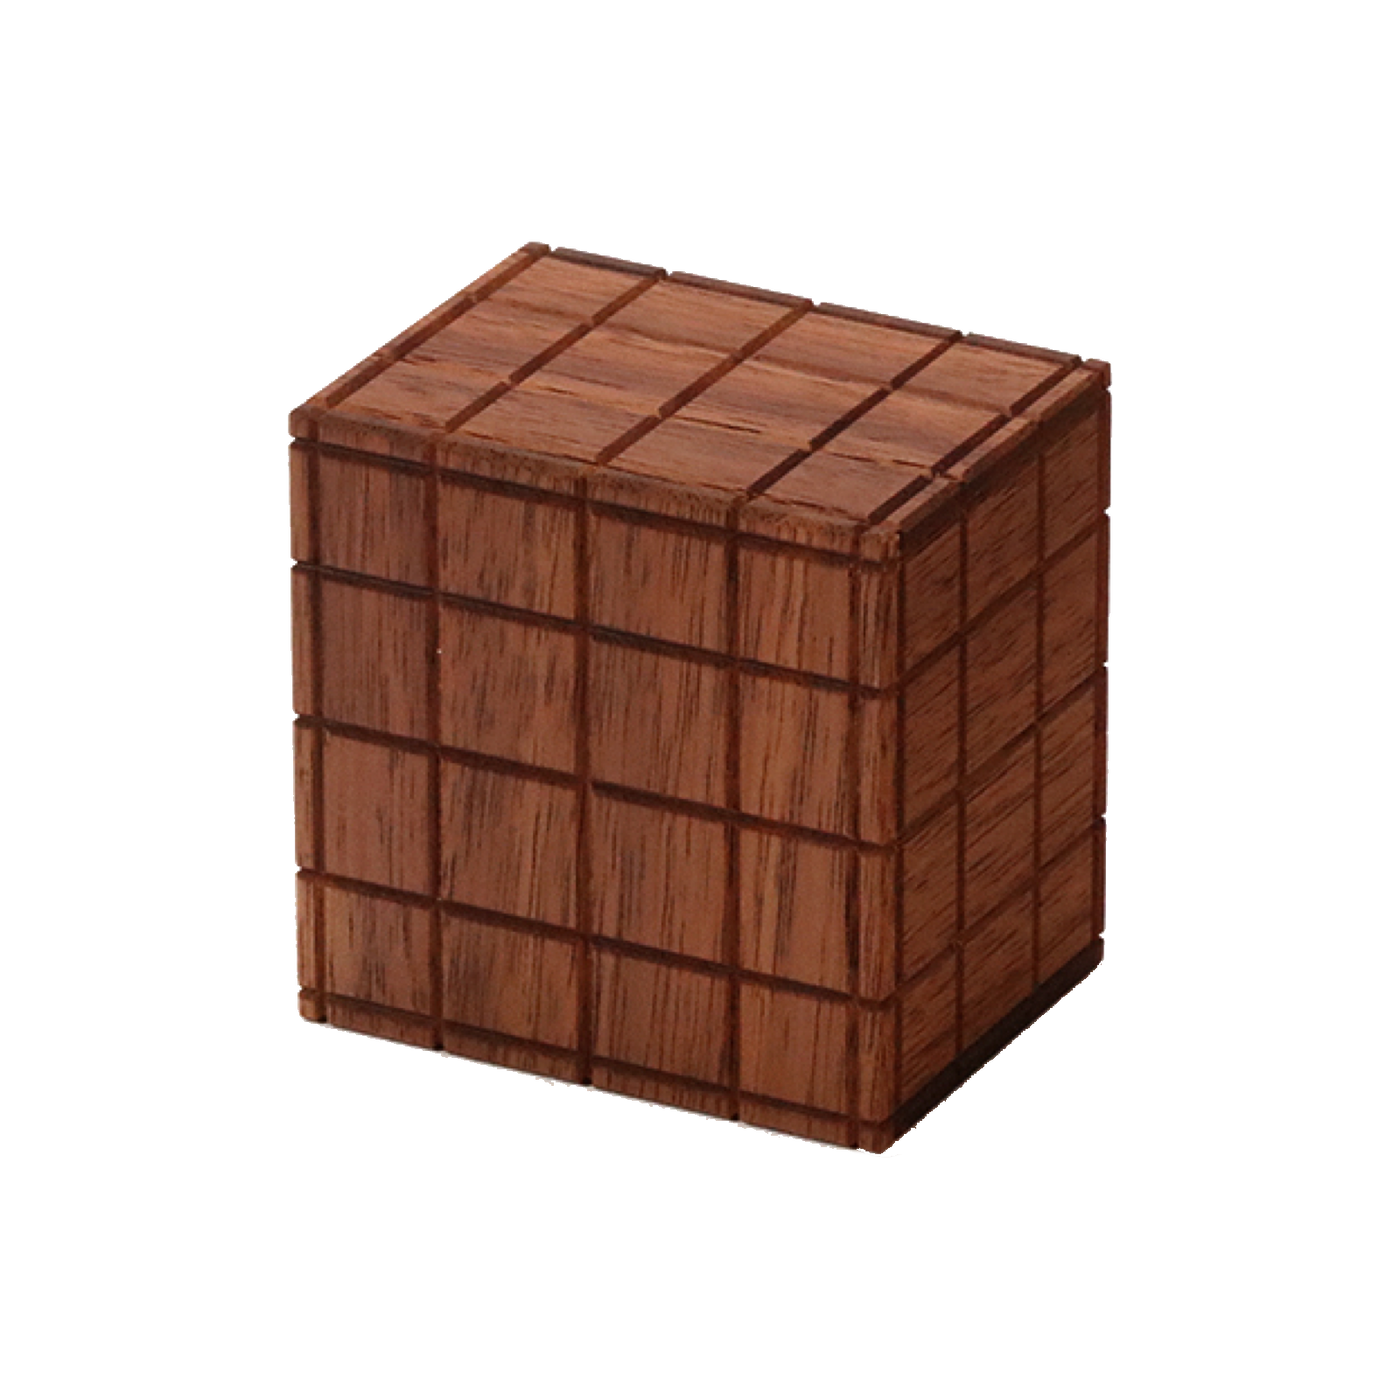 Karakuri Small Box Block R